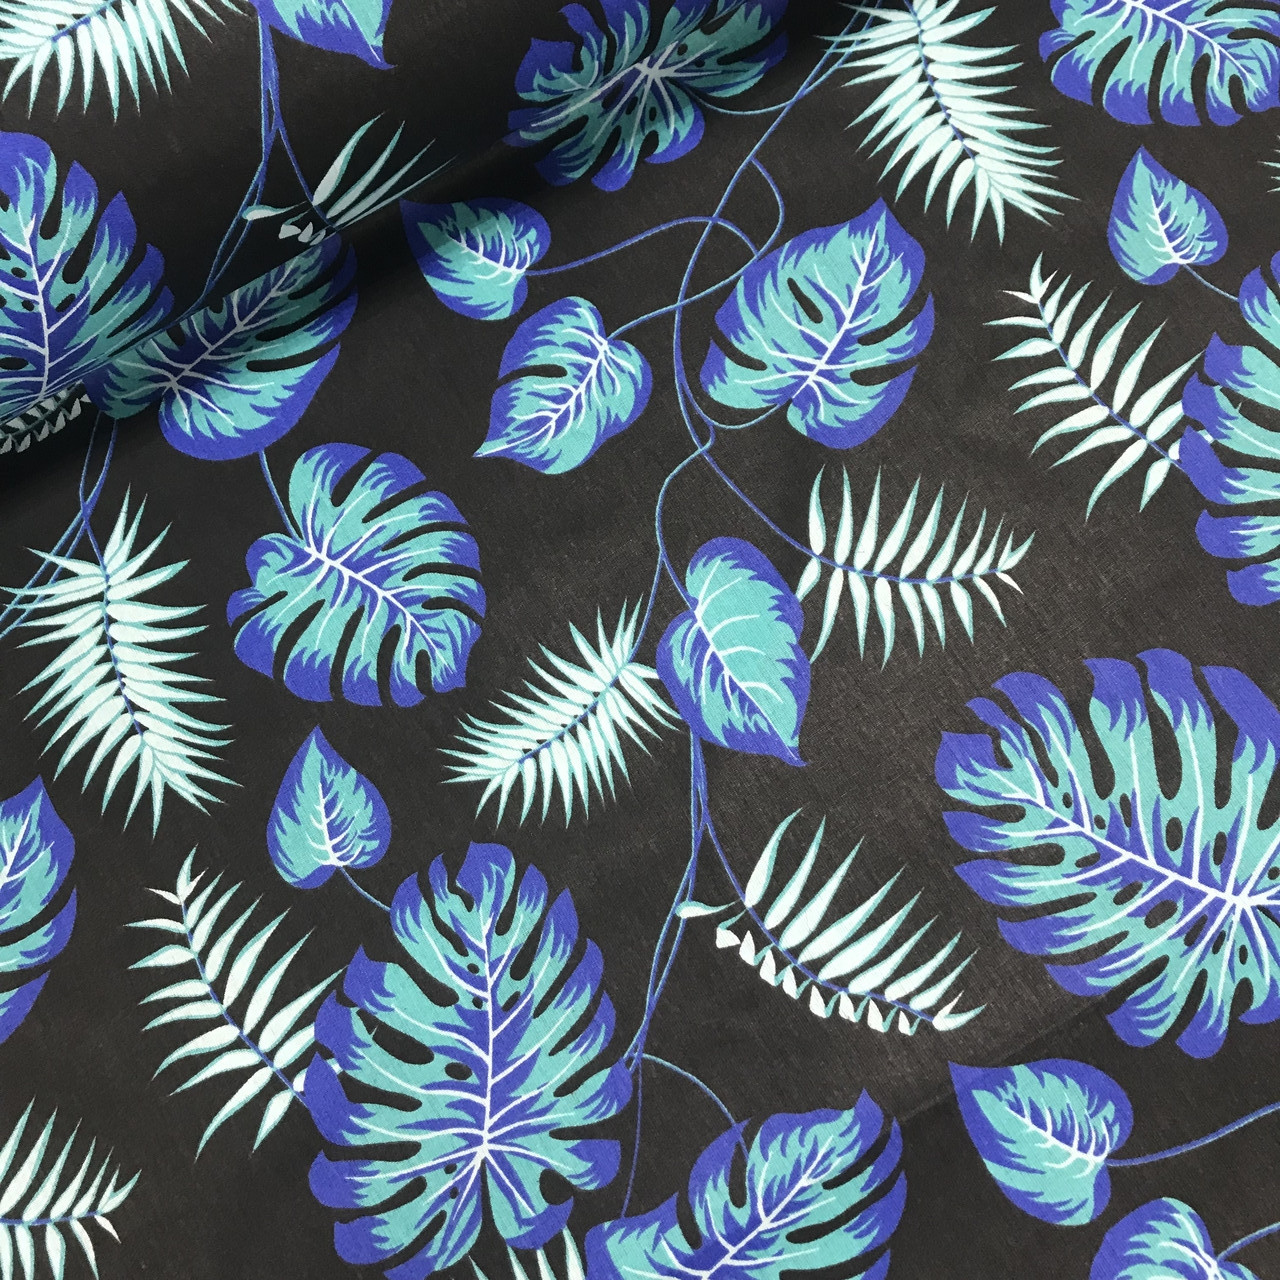 Хлопковая ткань польская листья папоротника фиолетово-бирюзово-белые на черном